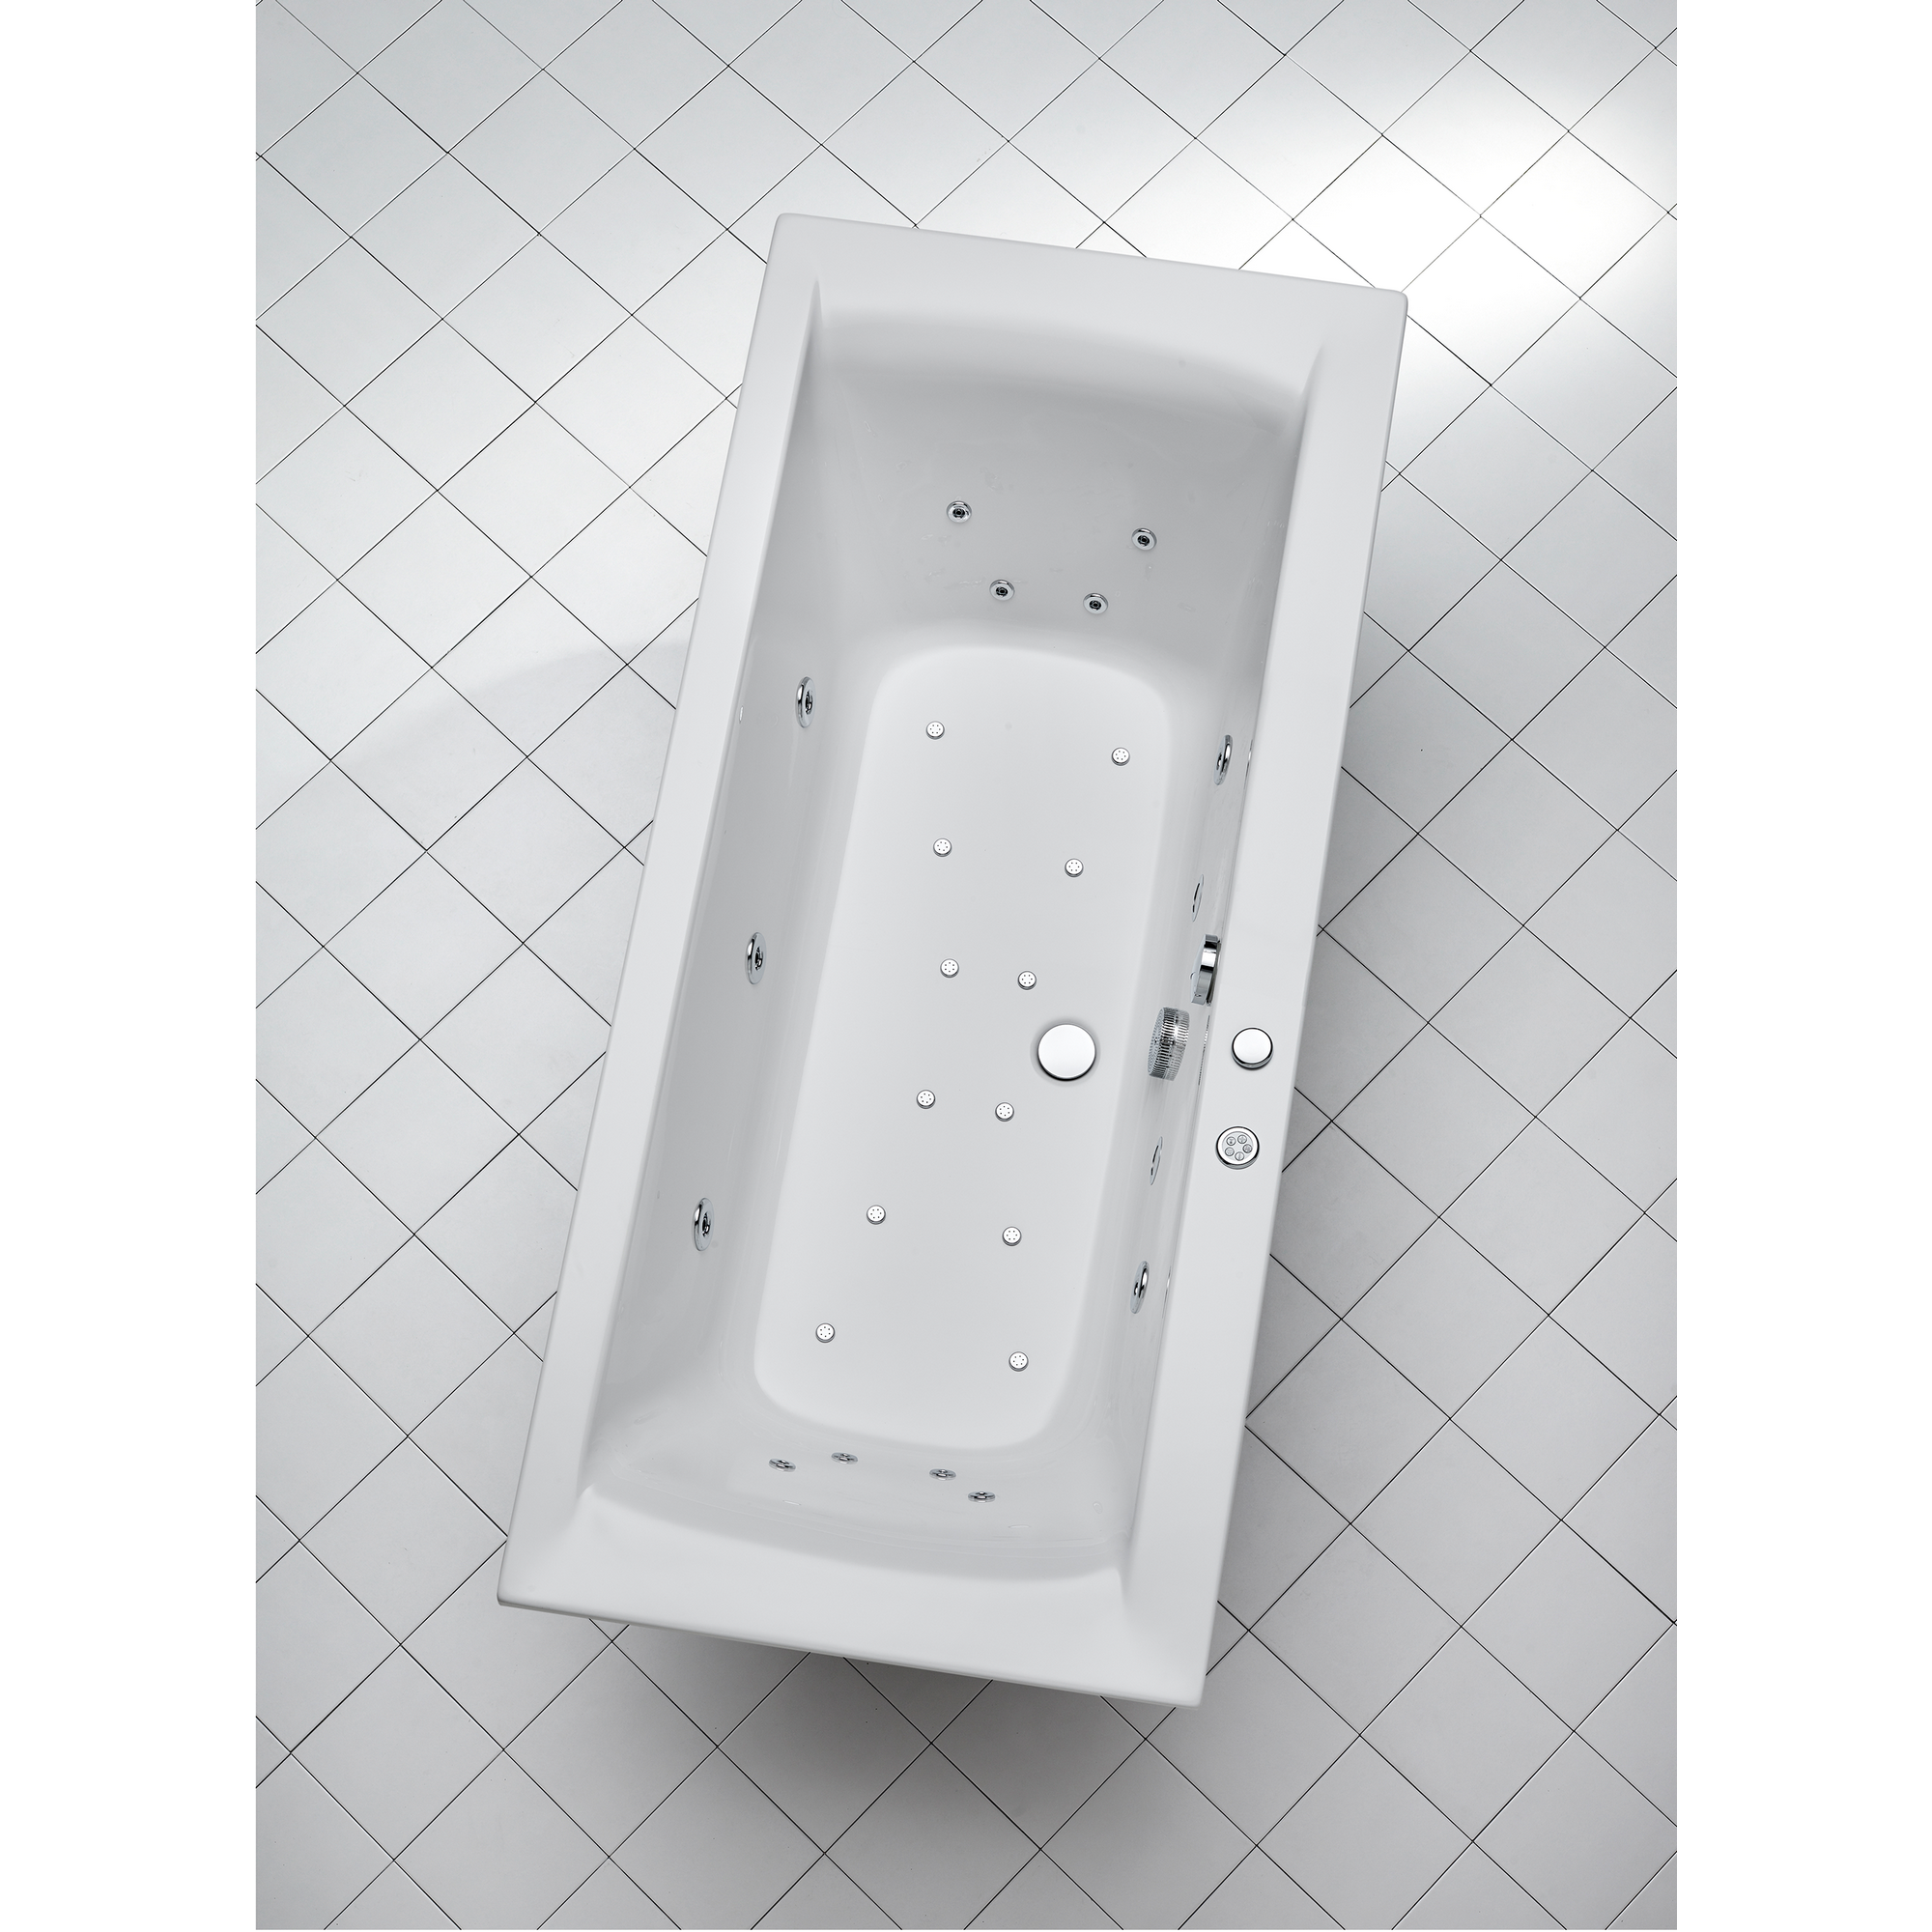 Whirlpool-Komplettset 'Rosa' Sanitäracryl weiß 170 x 75 x 45 cm + product picture